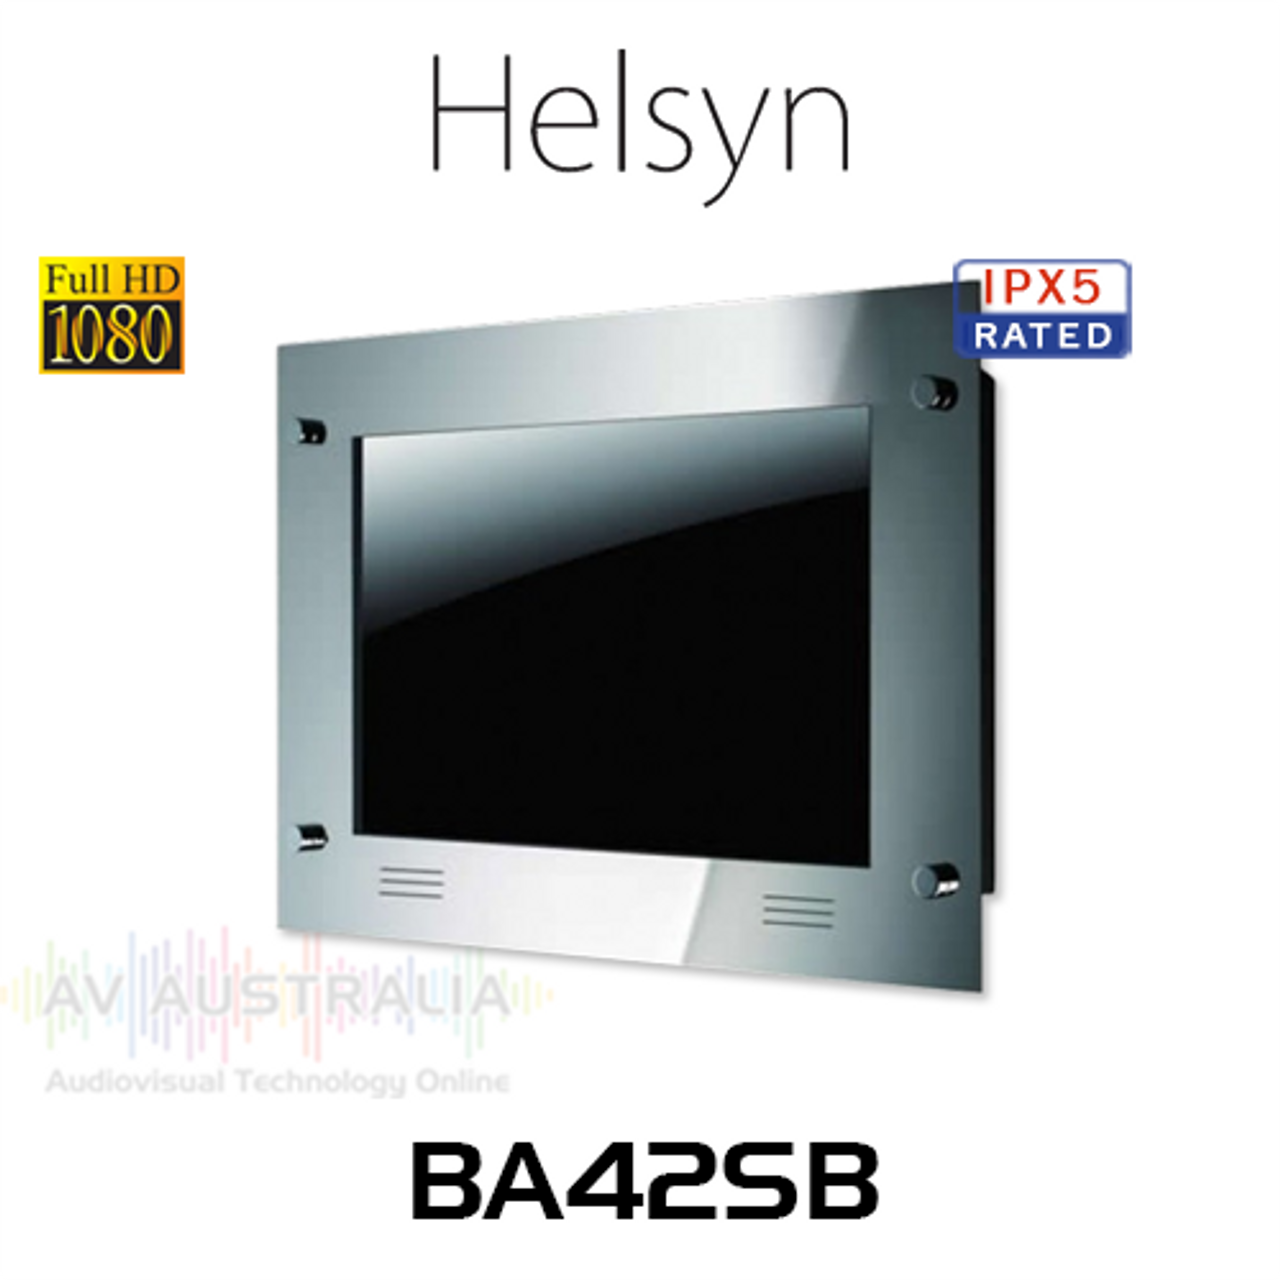 Helsyn BA42SB 42" IPX5 Waterproof Full HD Widescreen LCD TV